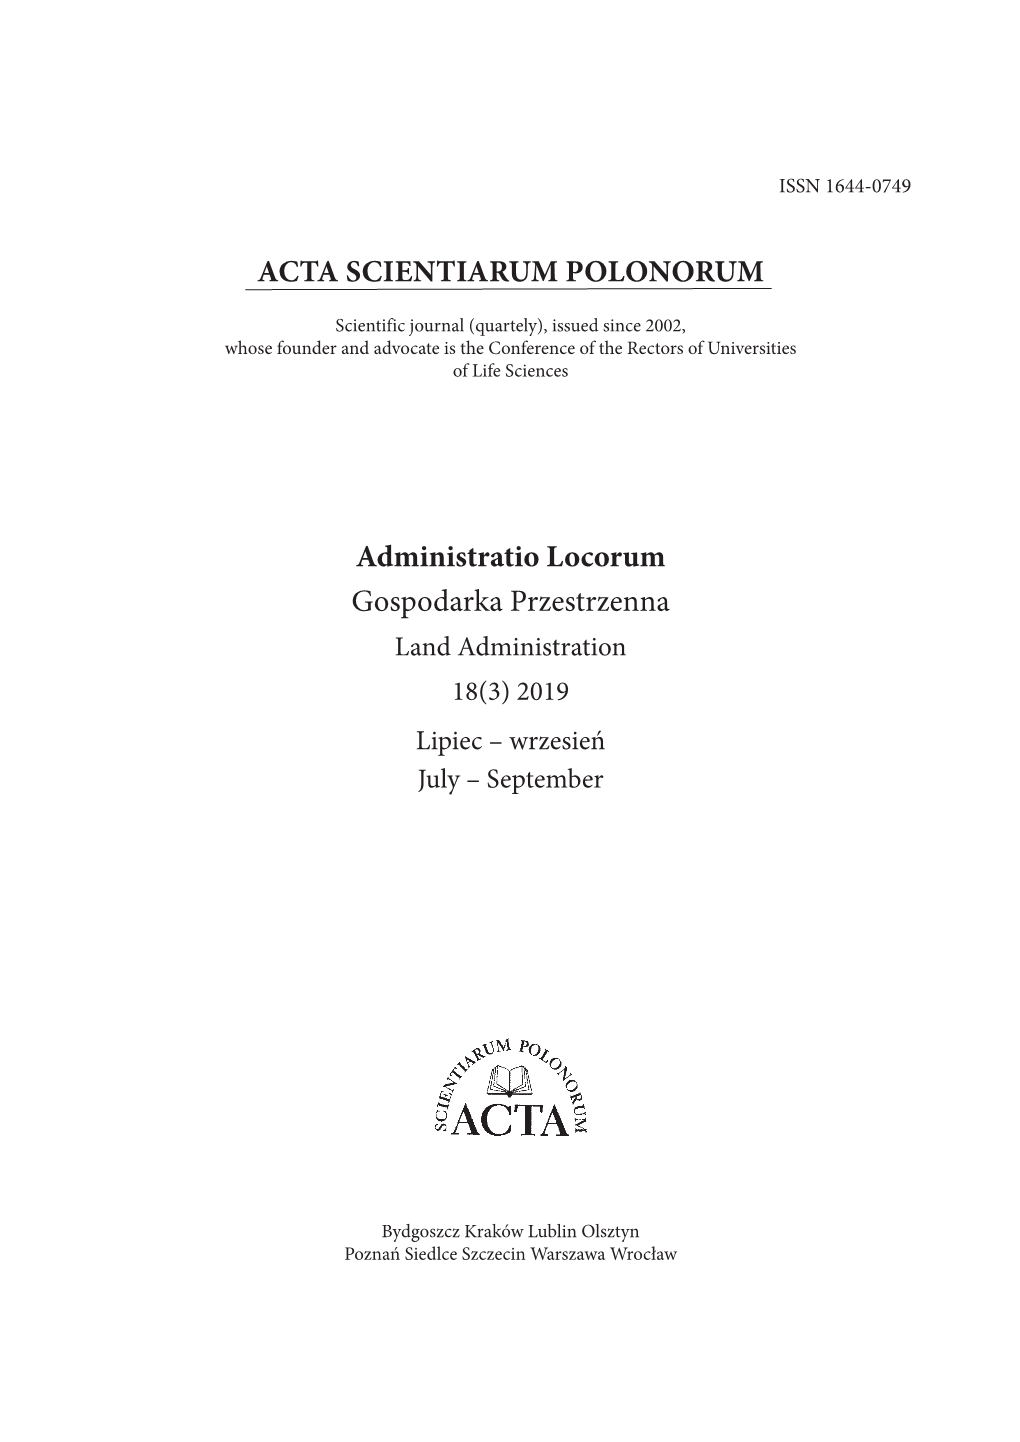 ACTA SCIENTIARUM POLONORUM Administratio Locorum